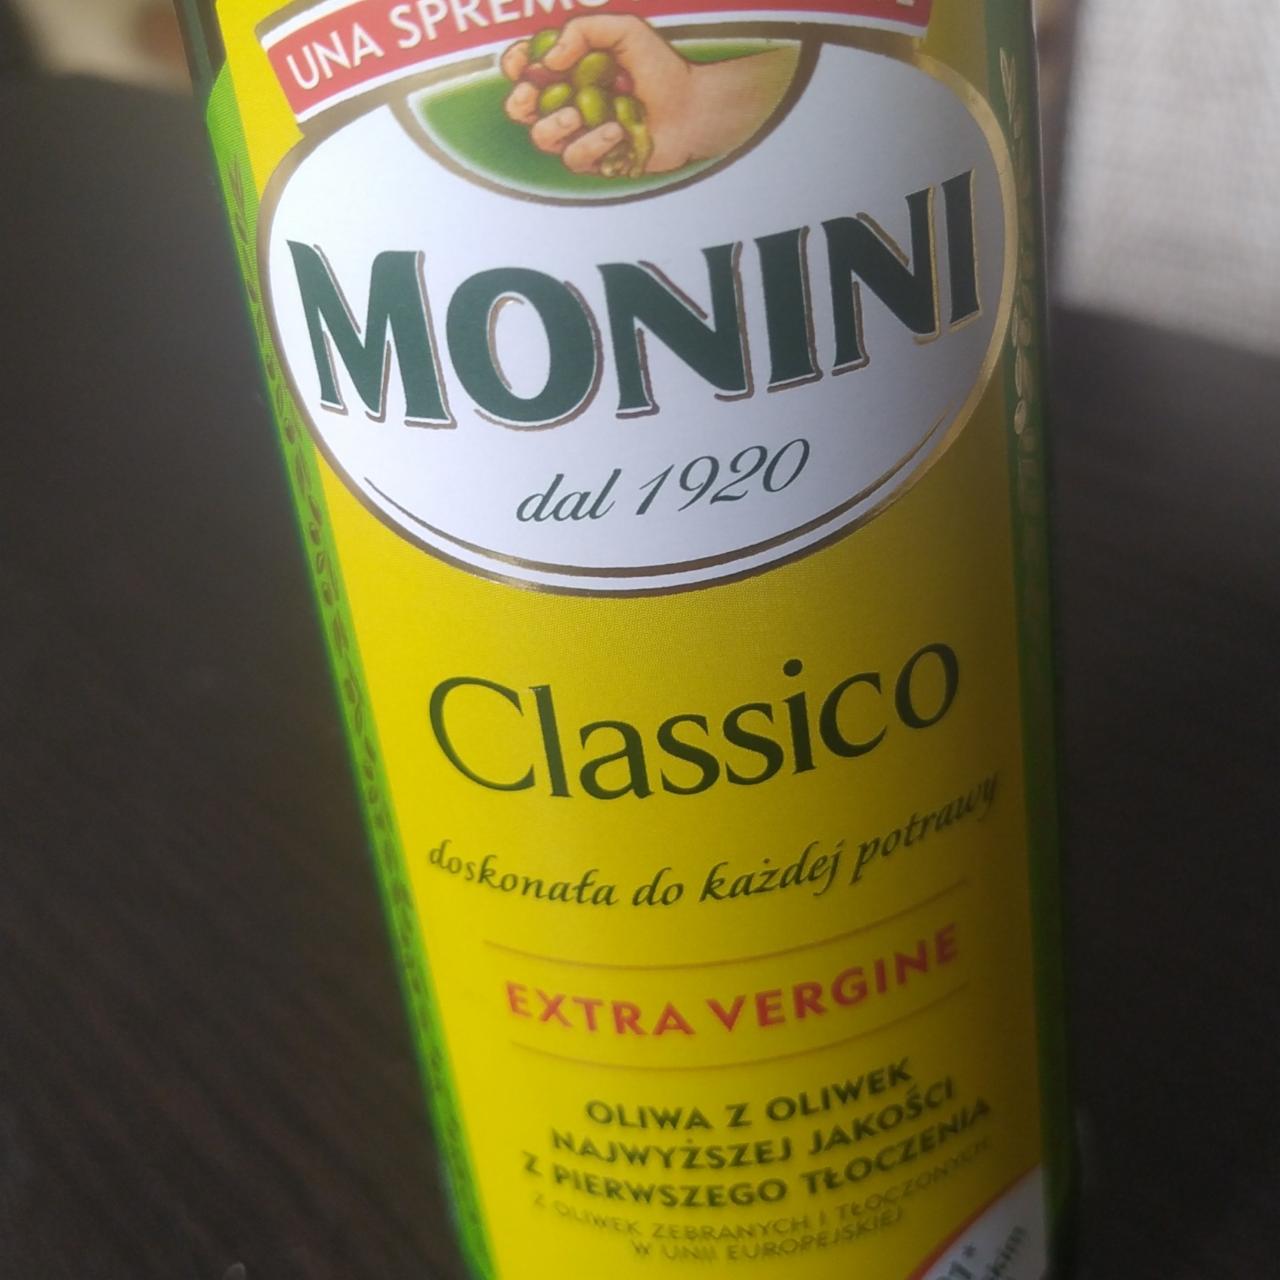 Zdjęcia - Classico Oliwa z oliwek najwyższej jakości z pierwszego tłoczenia Monini